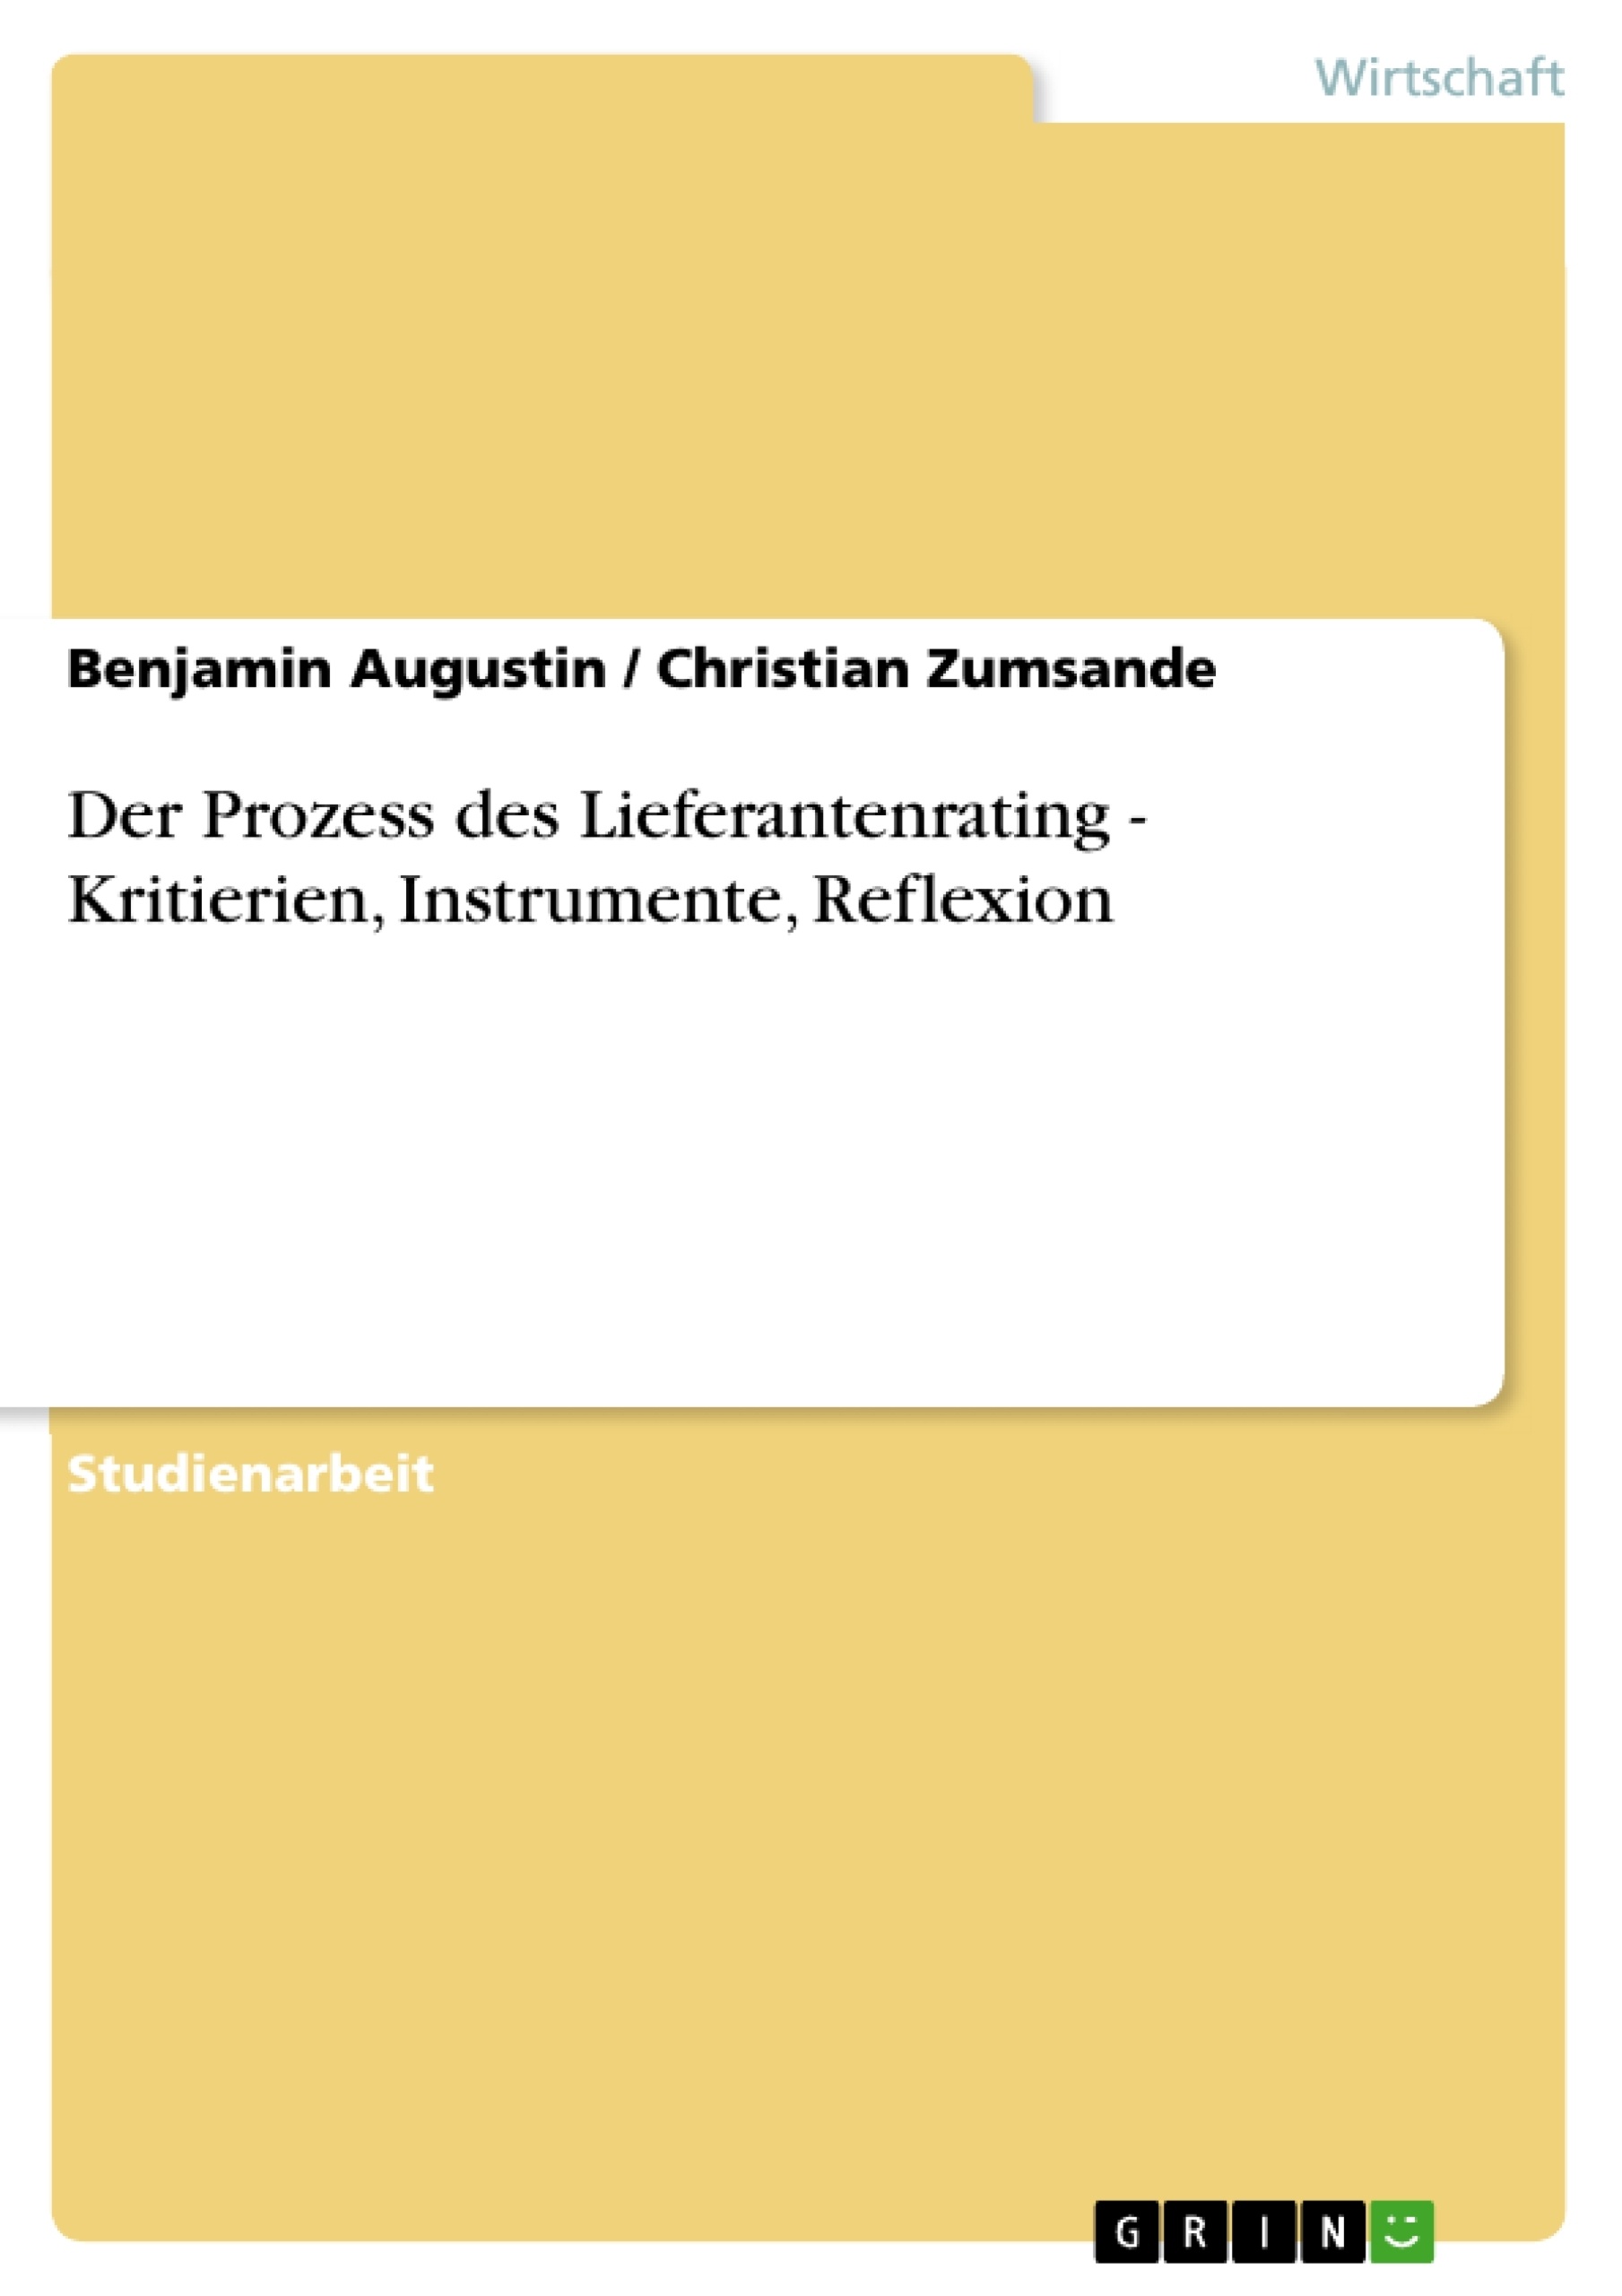 Title: Der Prozess des Lieferantenrating - Kritierien, Instrumente, Reflexion